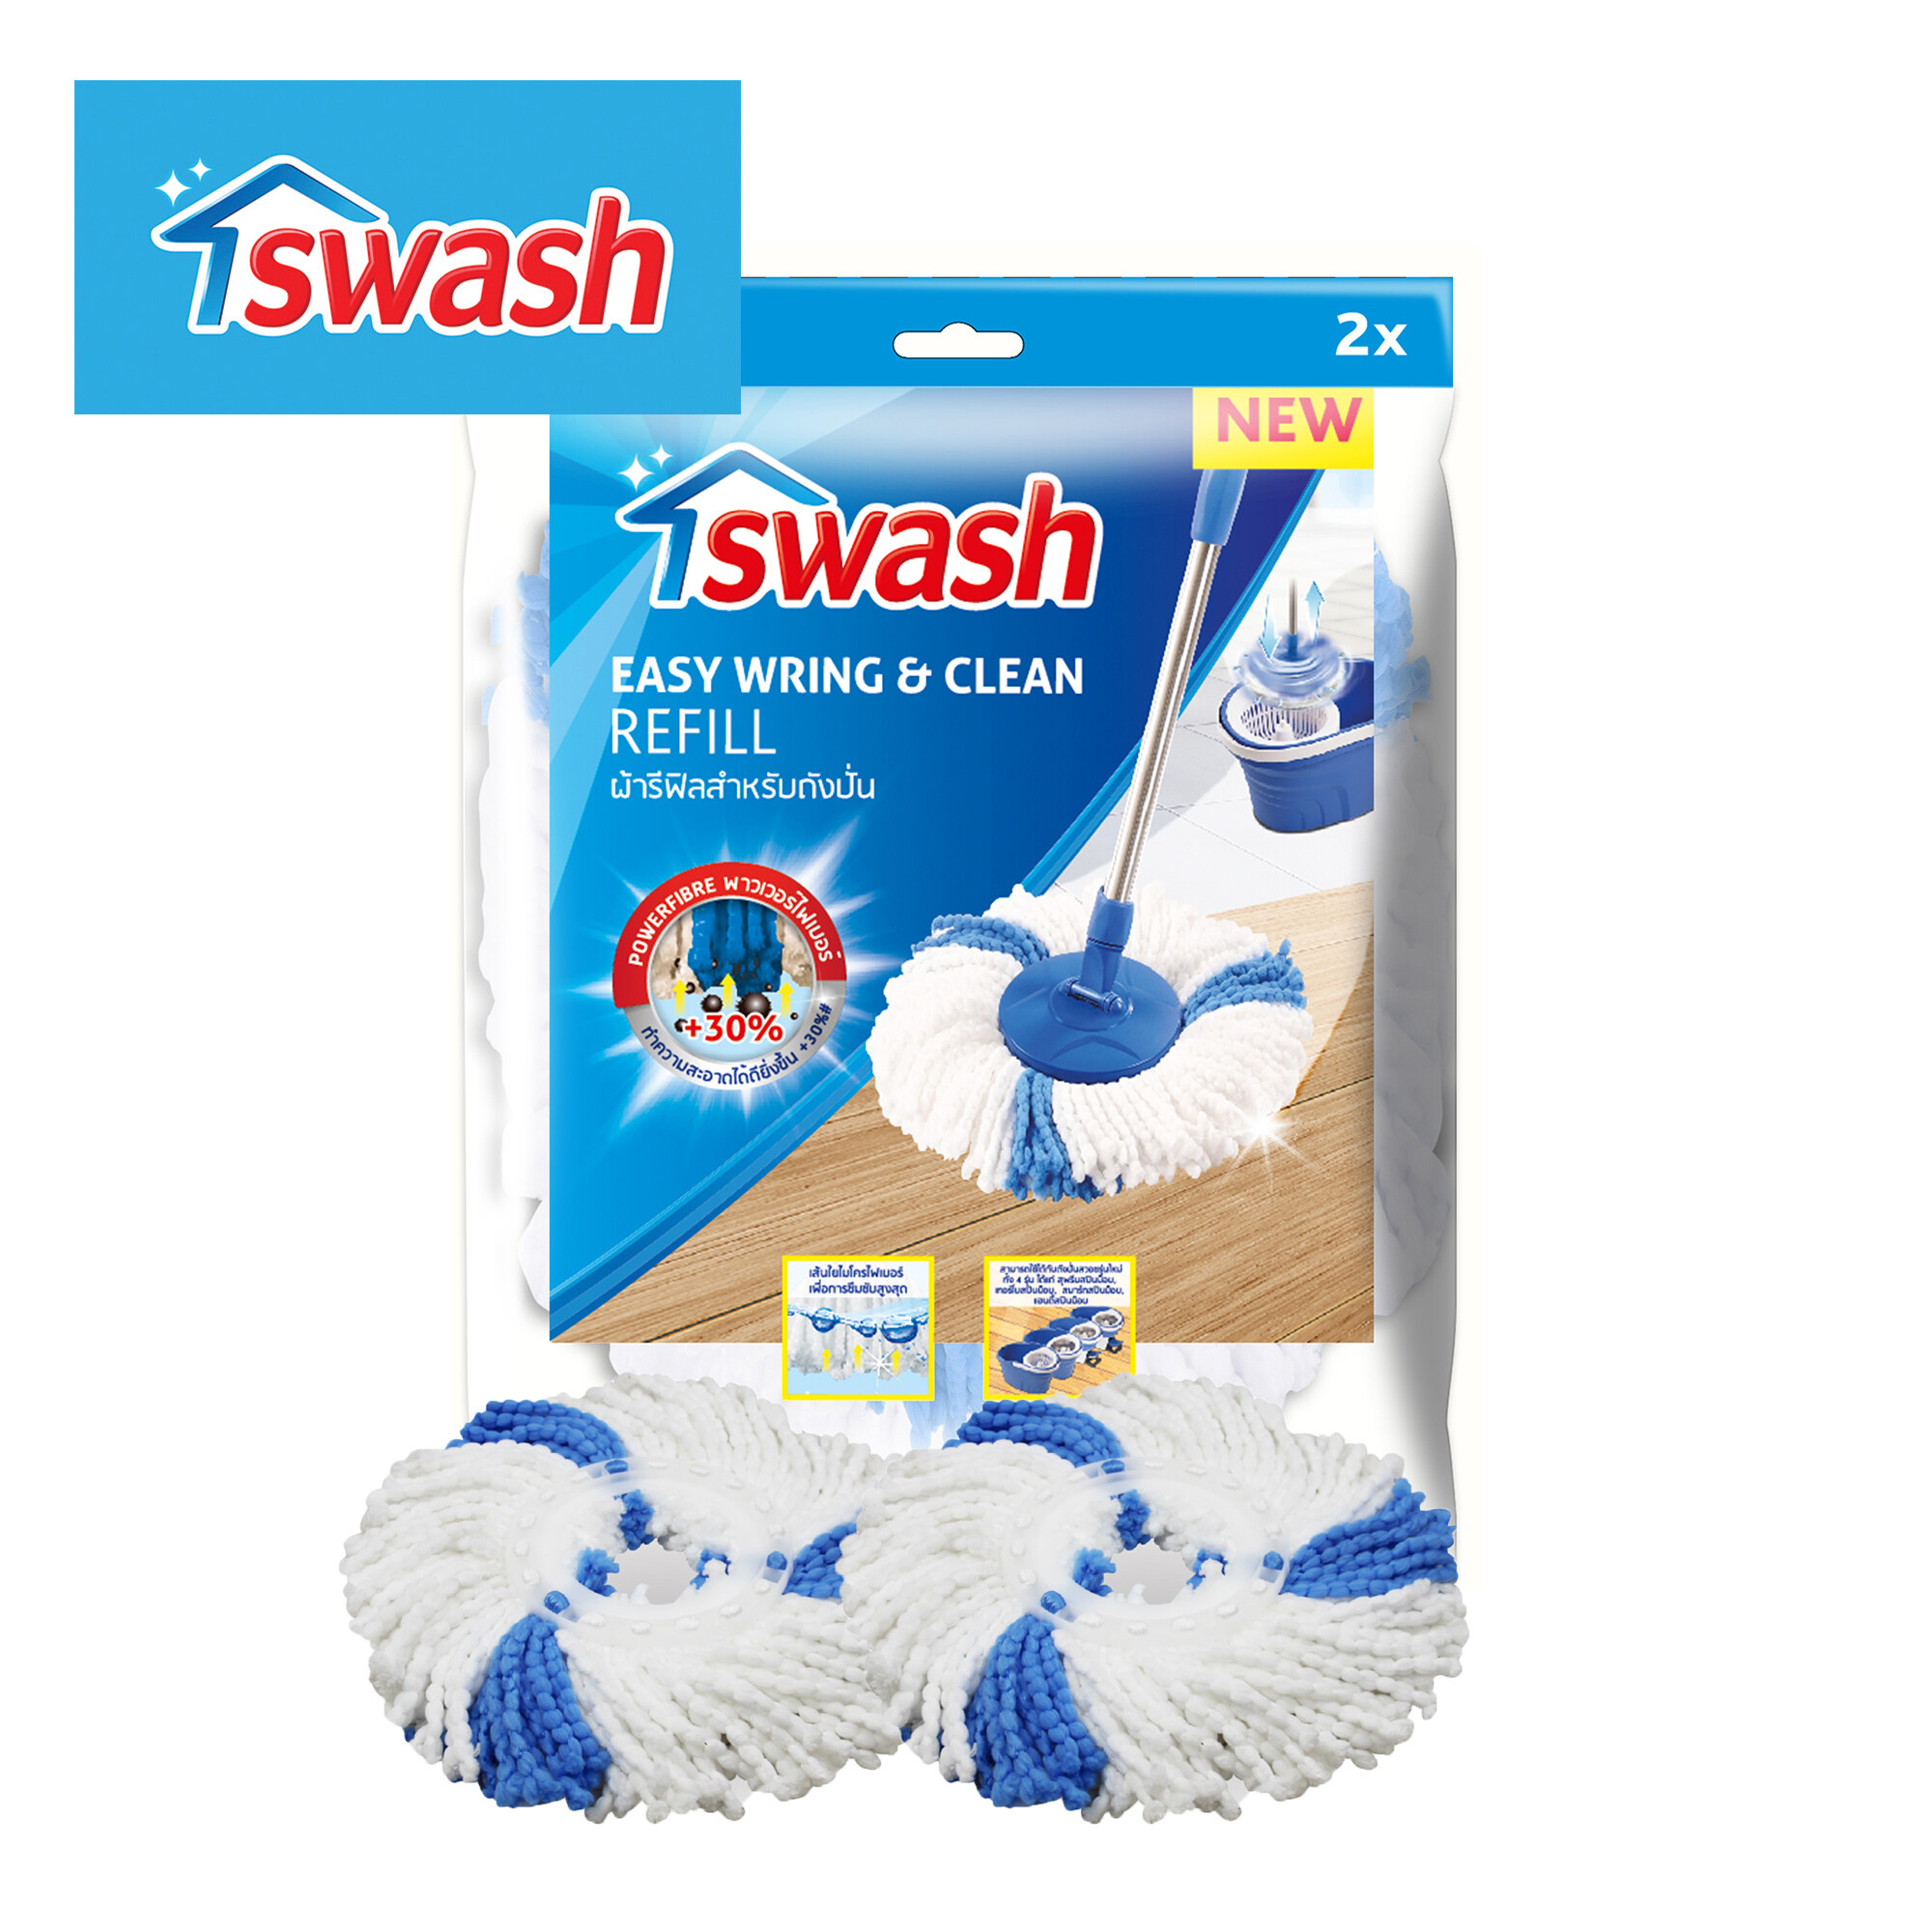 SWASH Easy Wring & Clean Refill - สวอช อีซี่ริงแอนด์คลีน ผ้ารีฟิลสำหรับถังปั่น ไม้ม็อบ ไม้ถูพื้น อะไหล่ผ้าม็อบ ม็อบถูพื้น